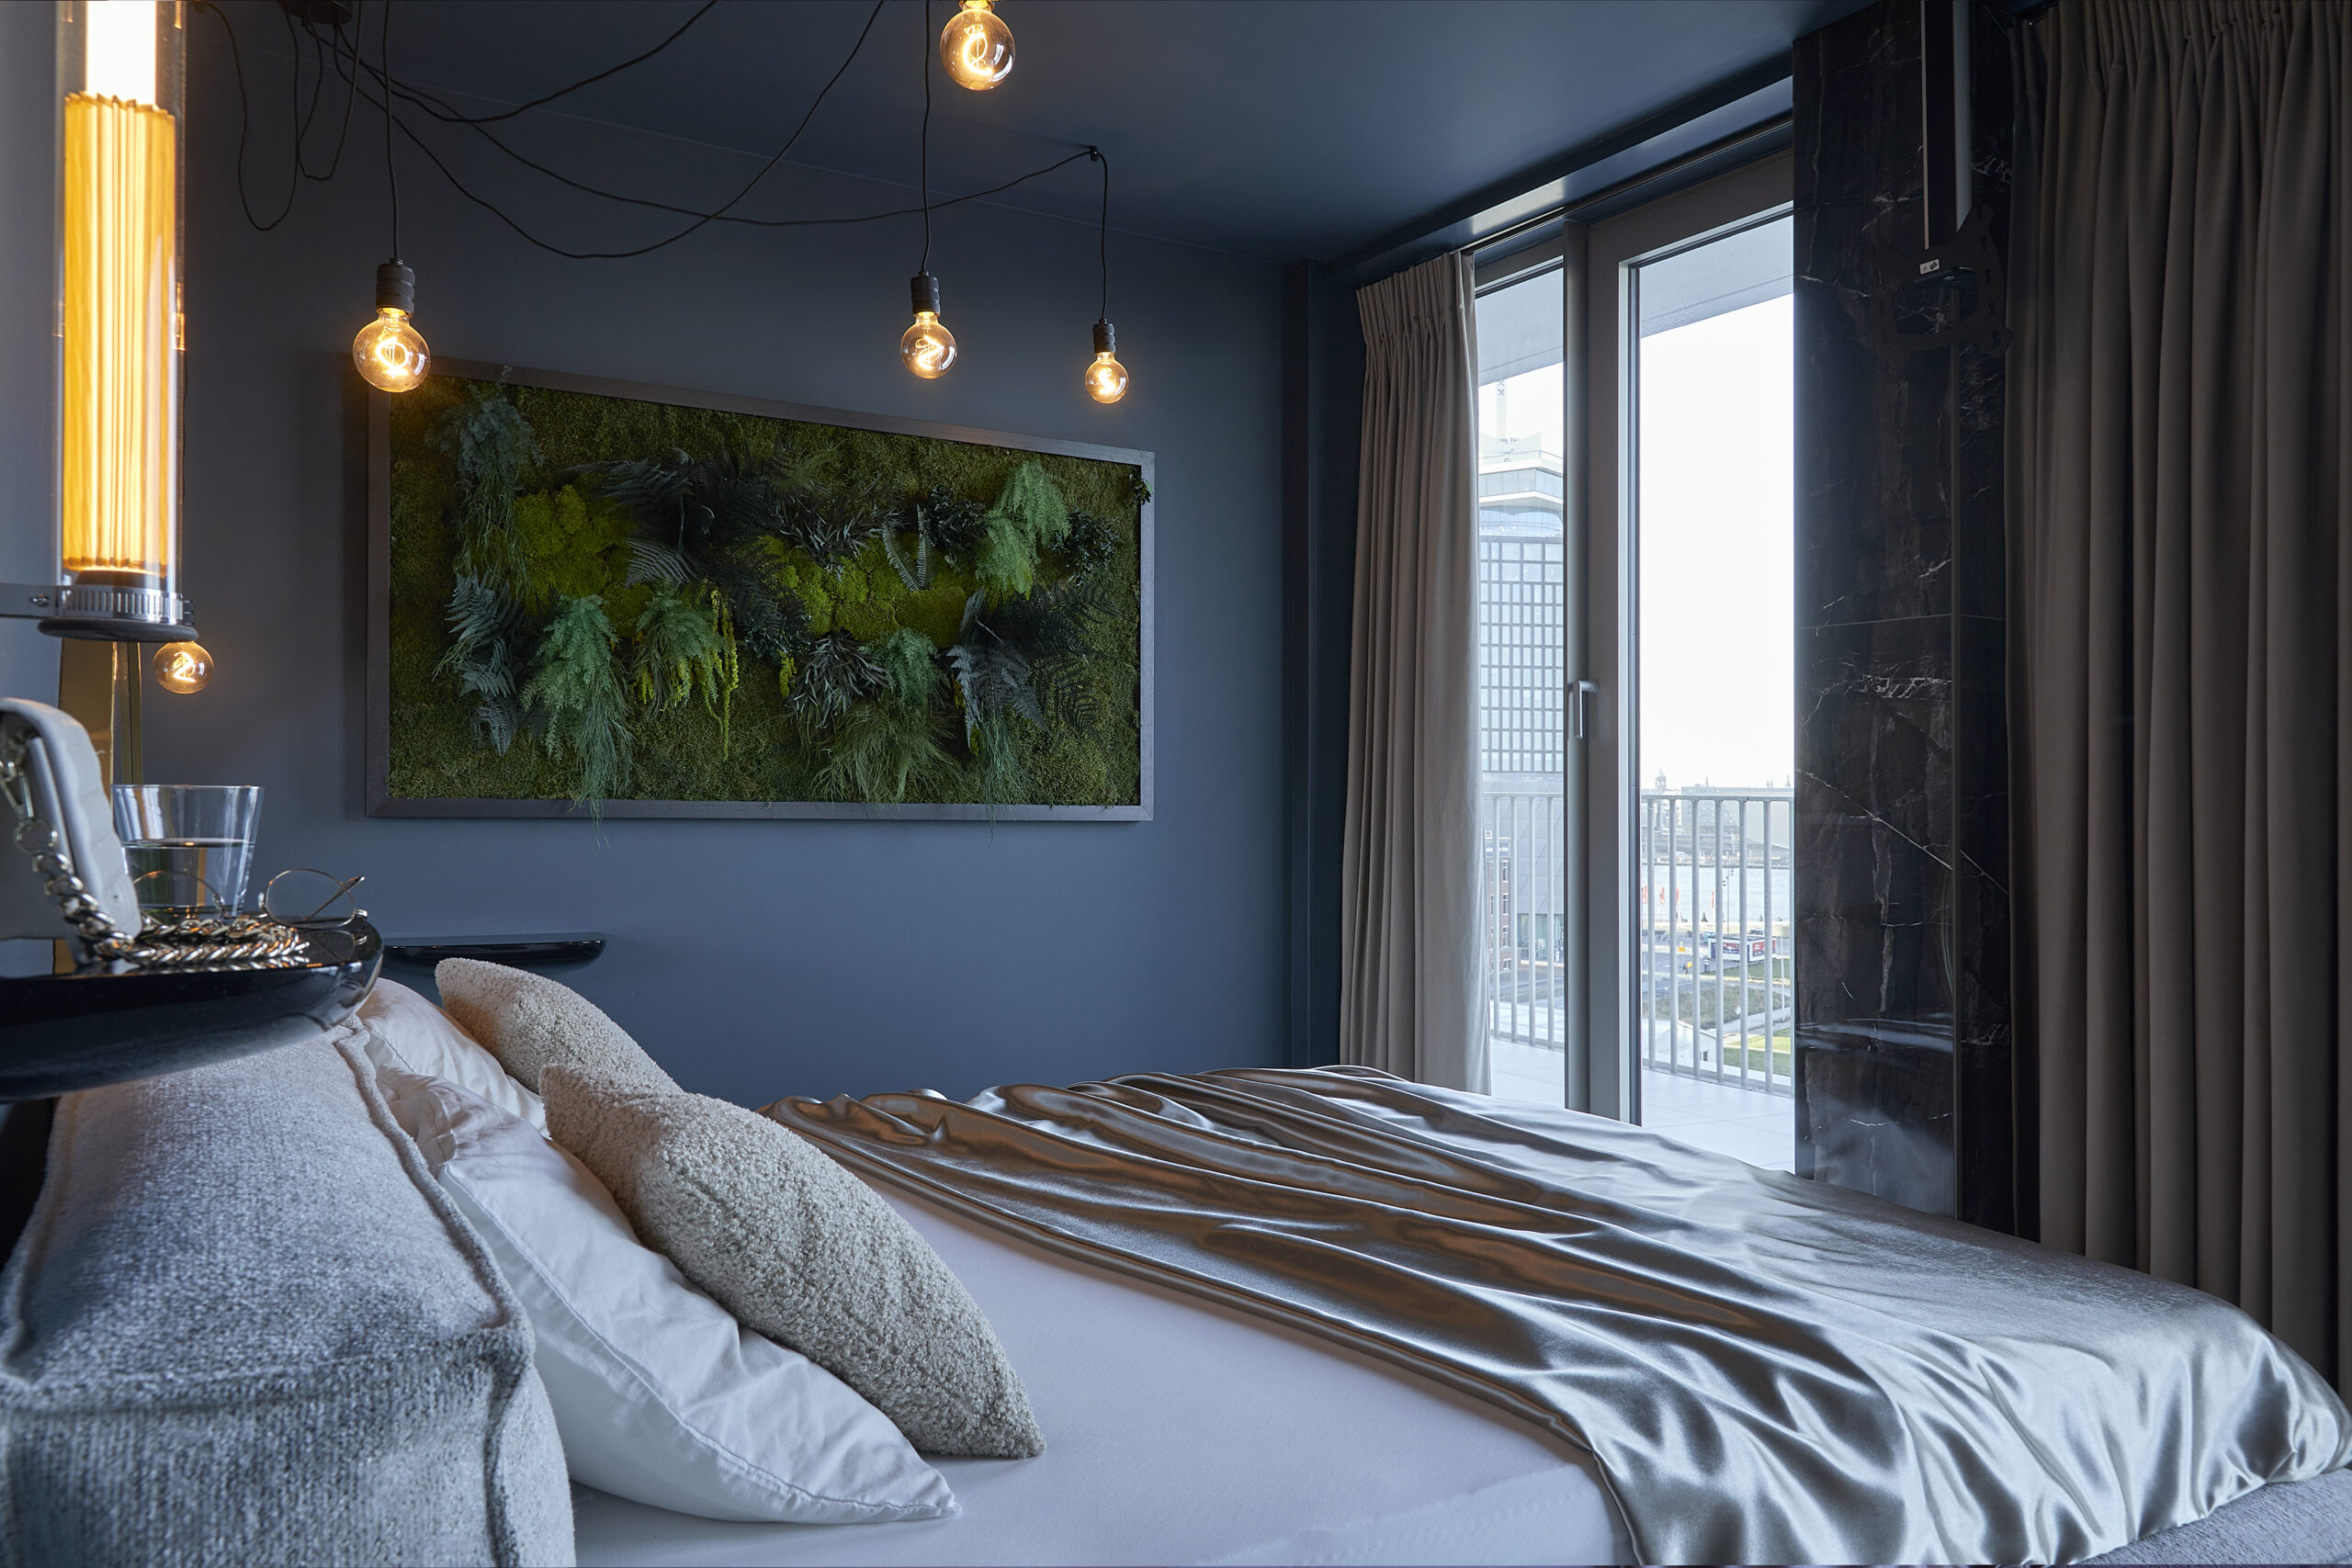 Slaapkamer met ruim bed met satijnen laken, hanglampen aan het plafond en een groen kunststuk aan de muur. Balkon met uitzicht op de stad.